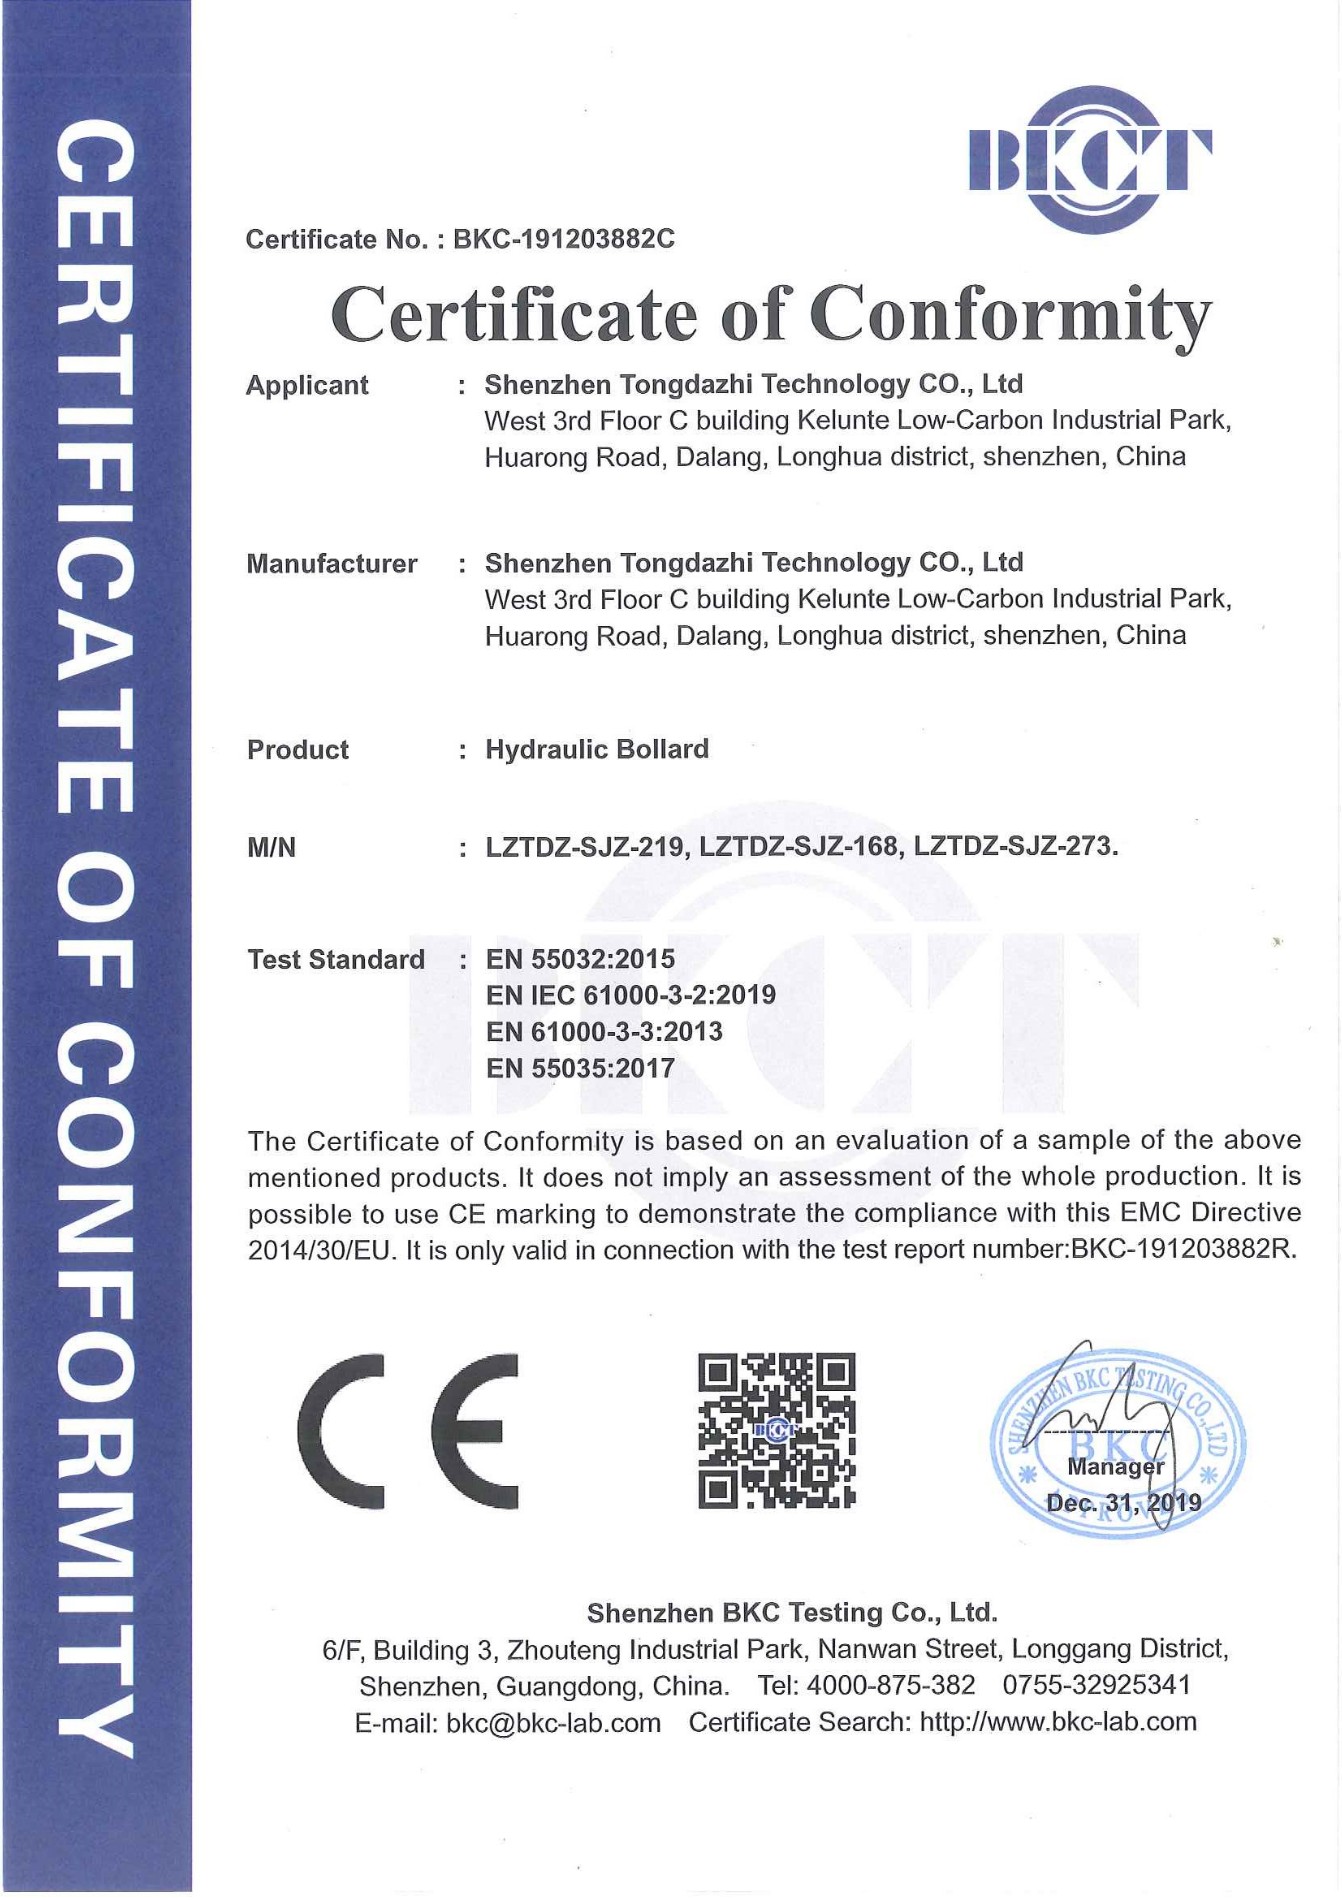 شهادة CE للحاويات الهيدروليكية